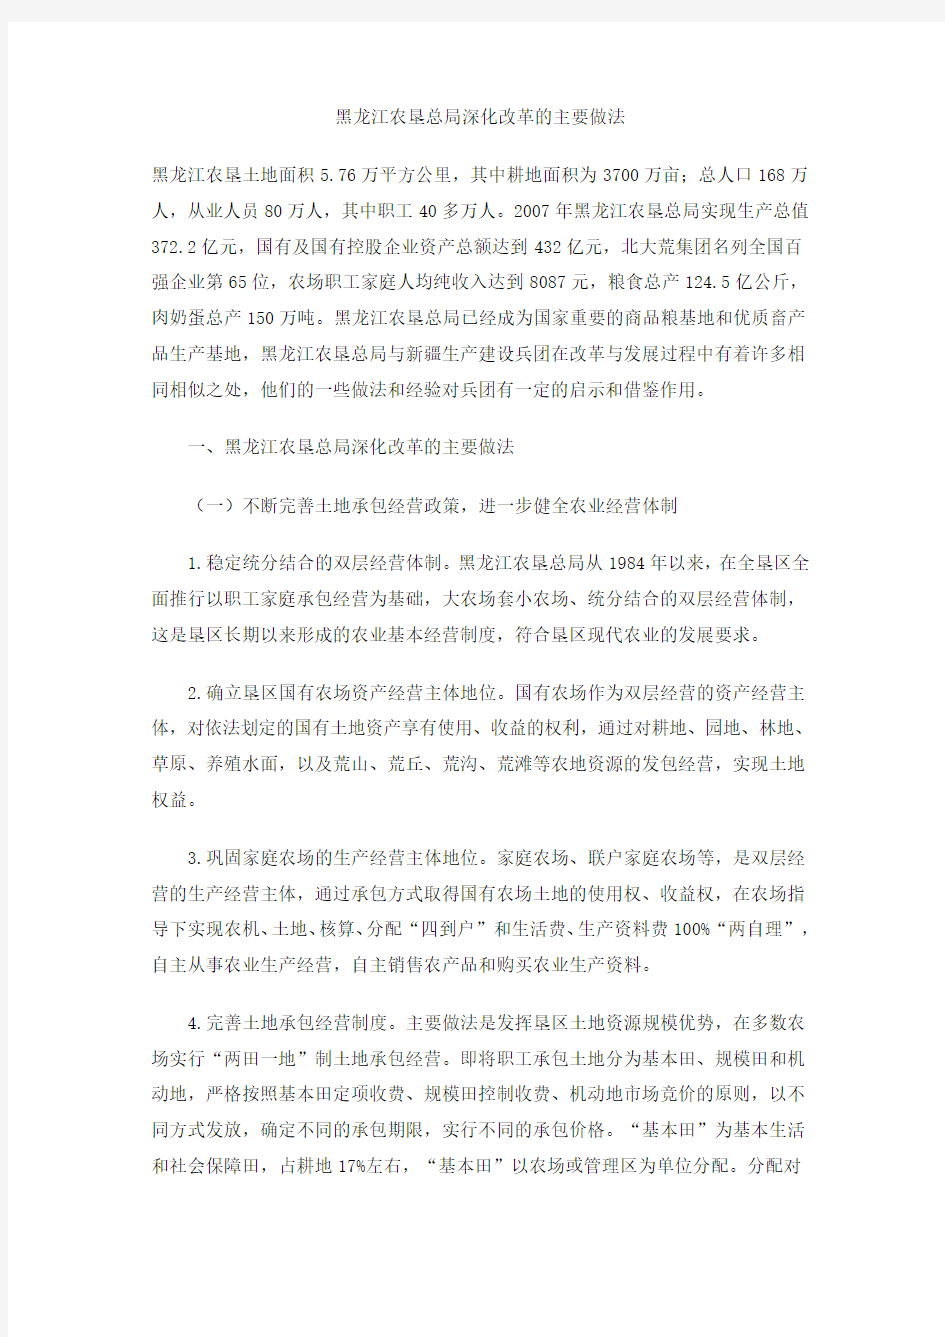 黑龙江农垦总局深化改革的主要做法